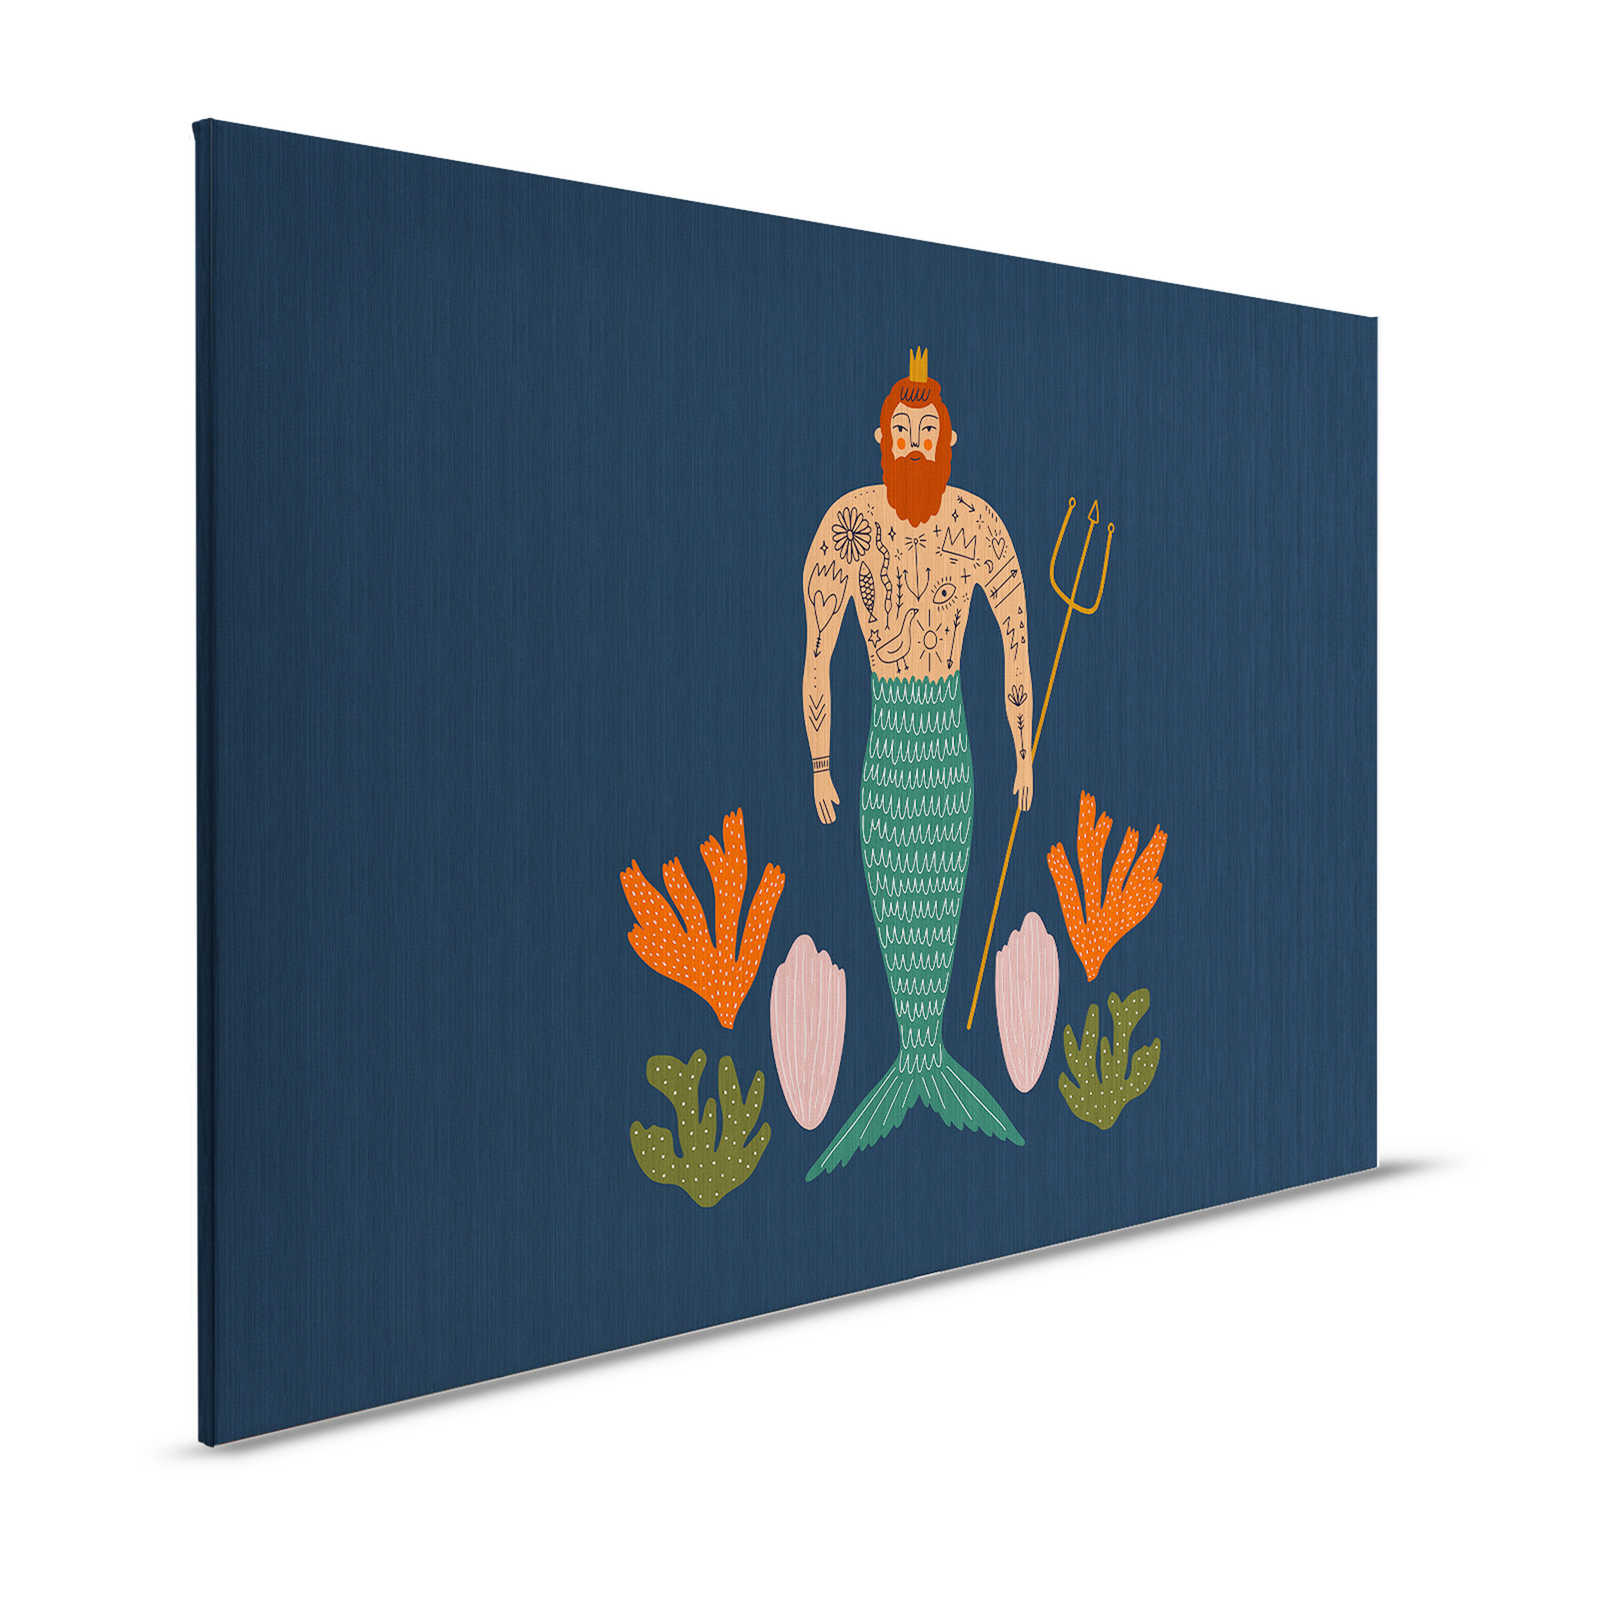 Down Under 1 - Canvas schilderij zeemeerman maritiem patroon in komische stijl - 1,20 m x 0,80 m
